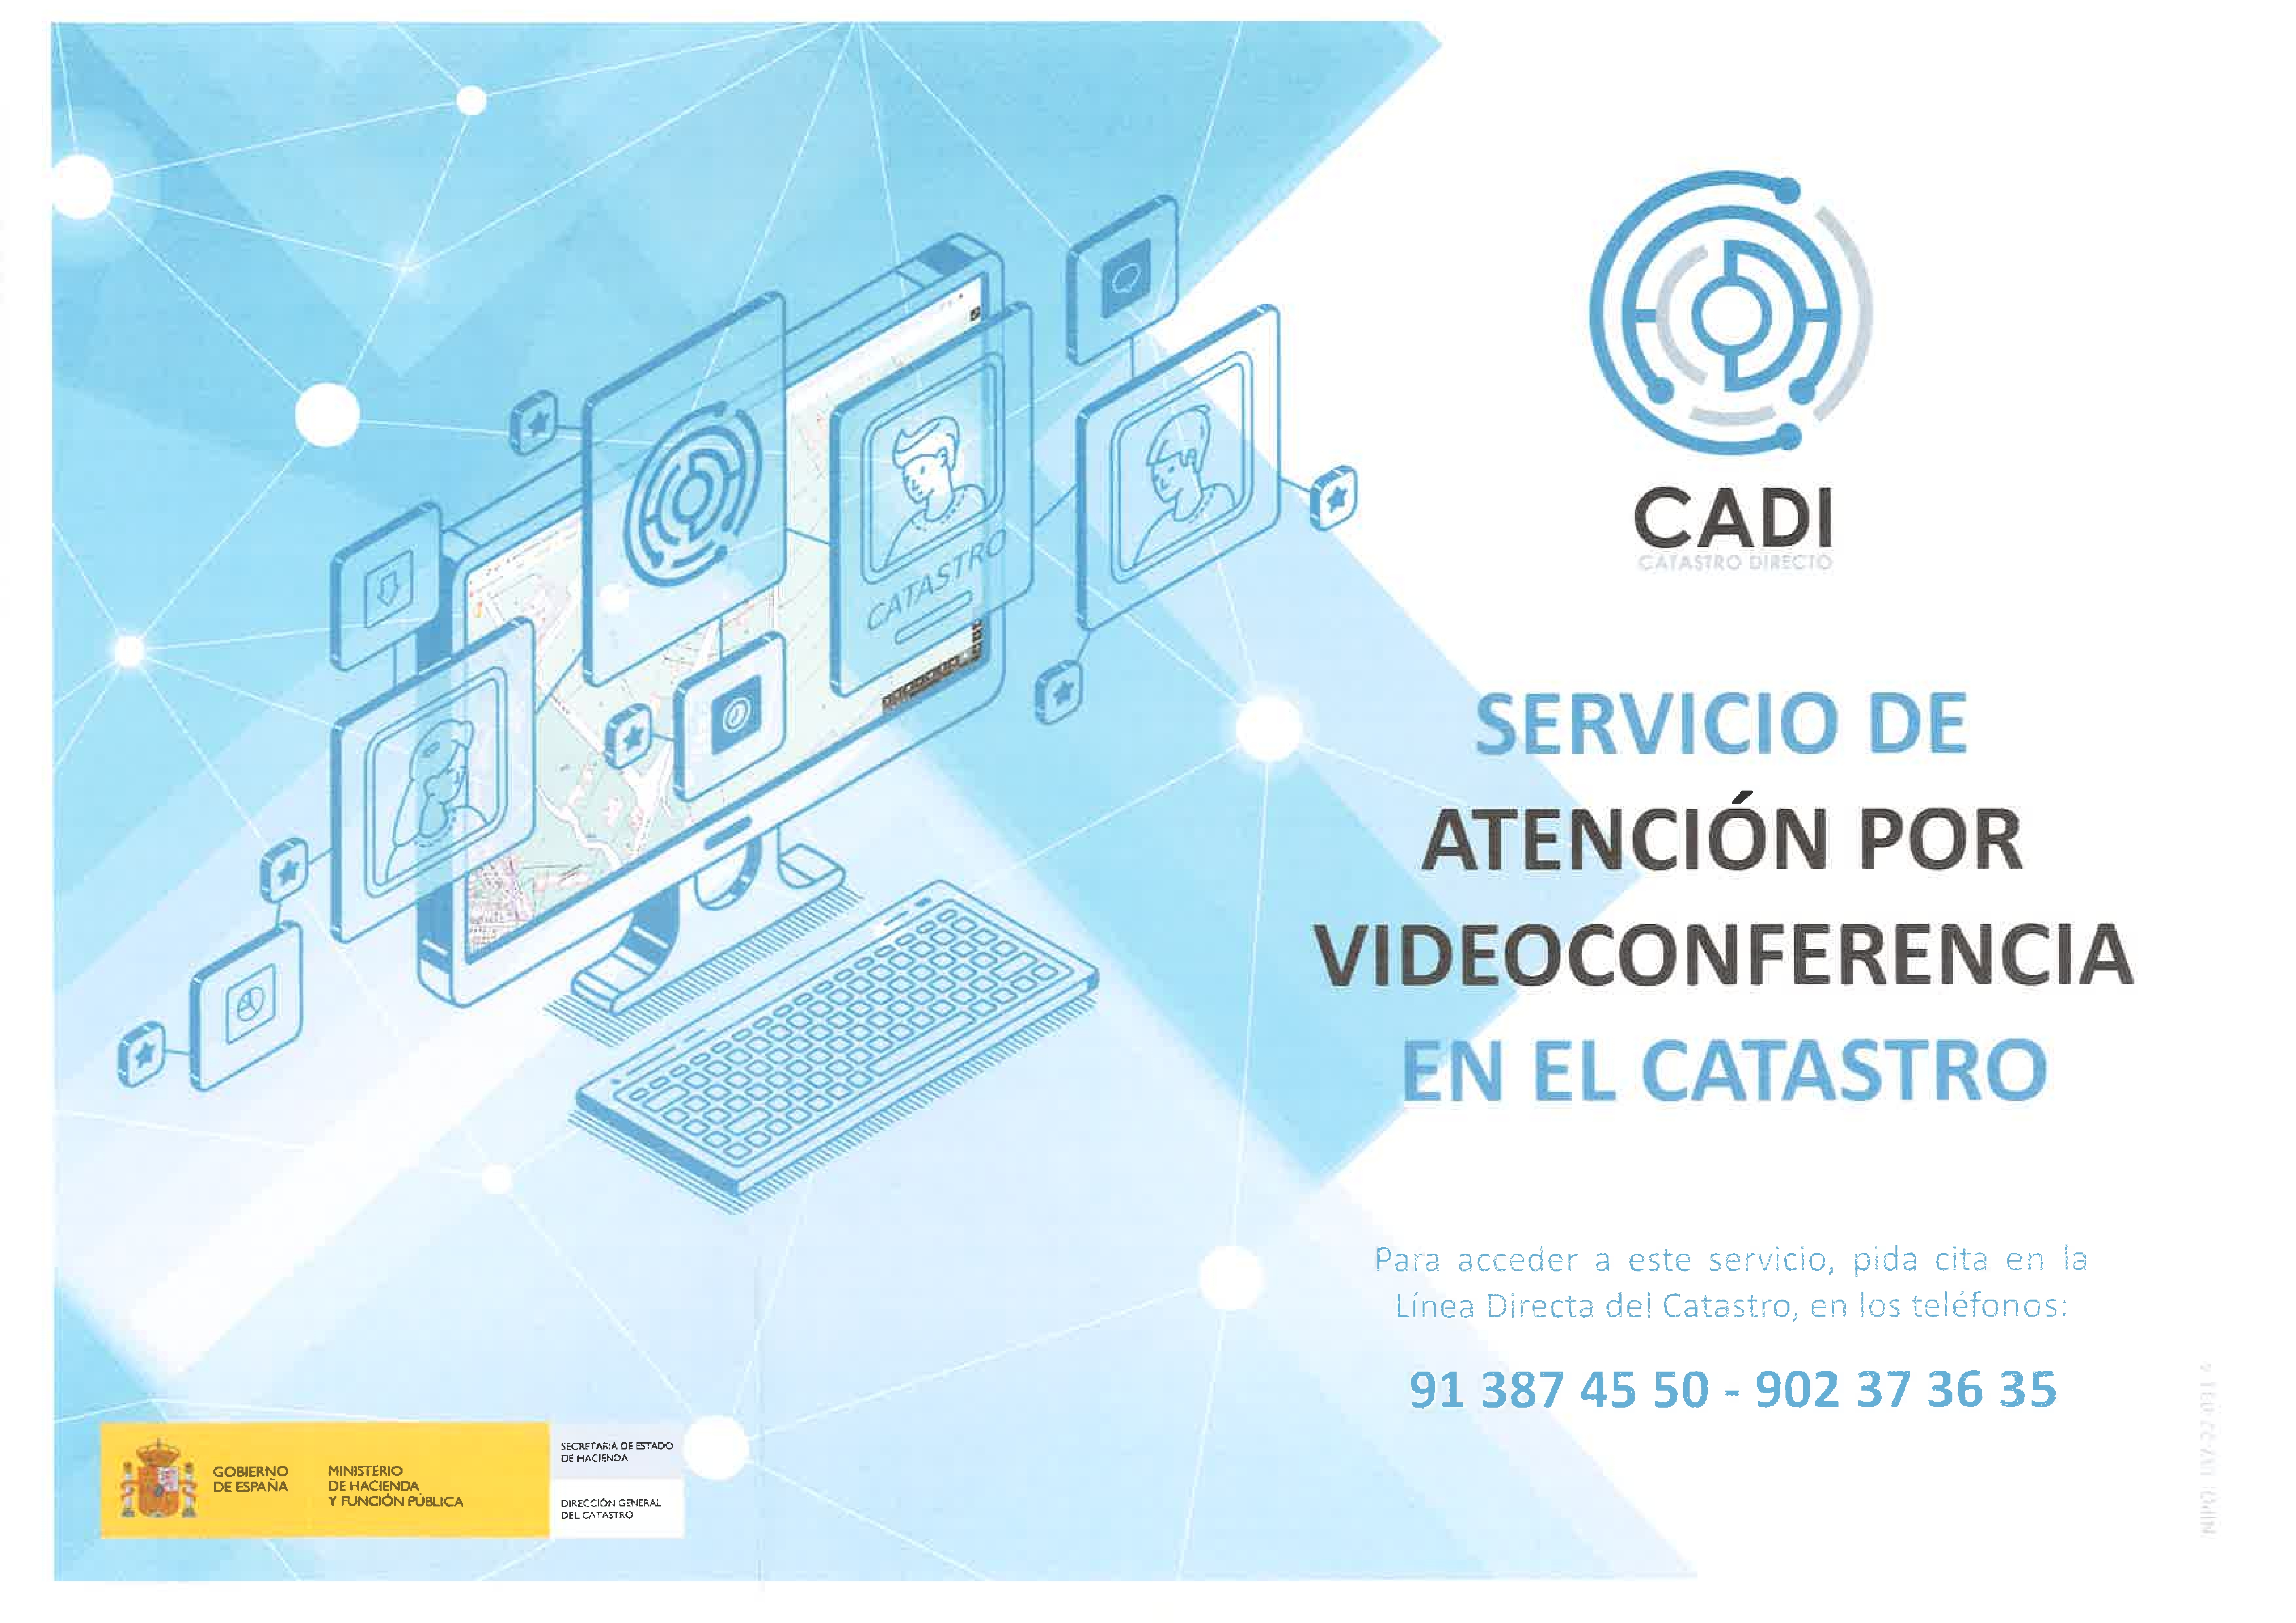 Nuevo canal de atención del Catastro por Videoconferencia